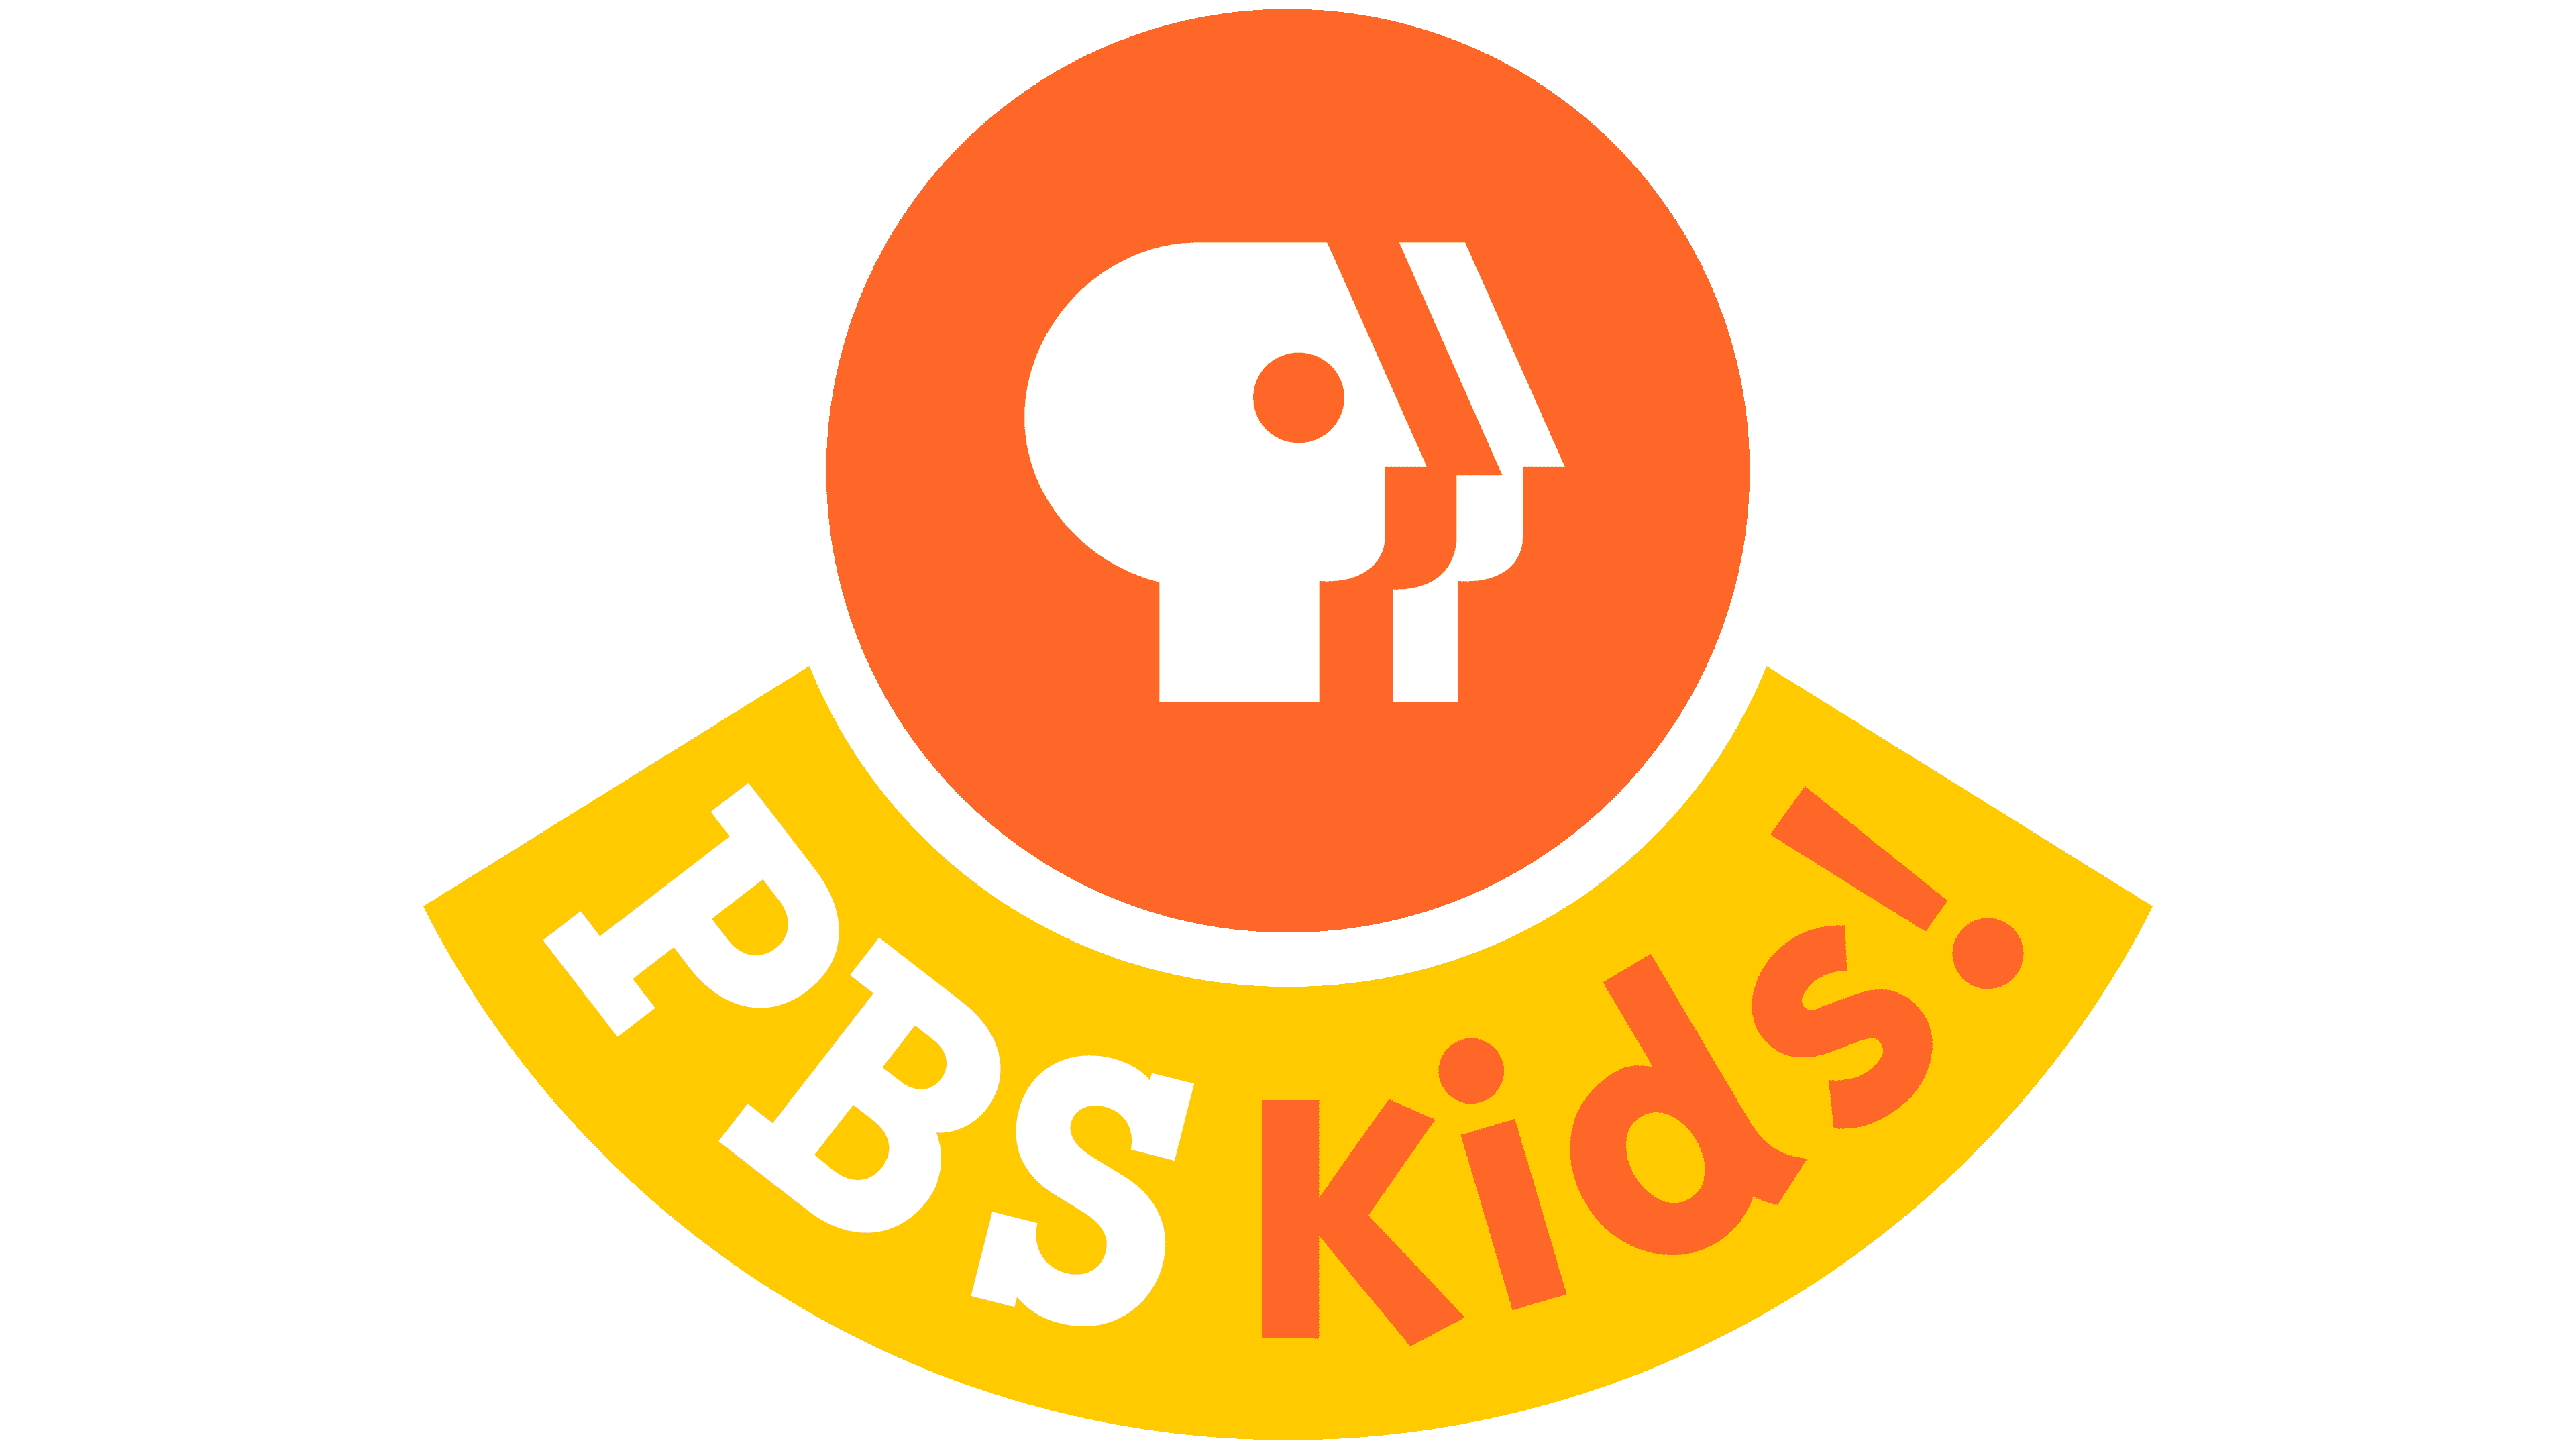 pbs kids logo 2022